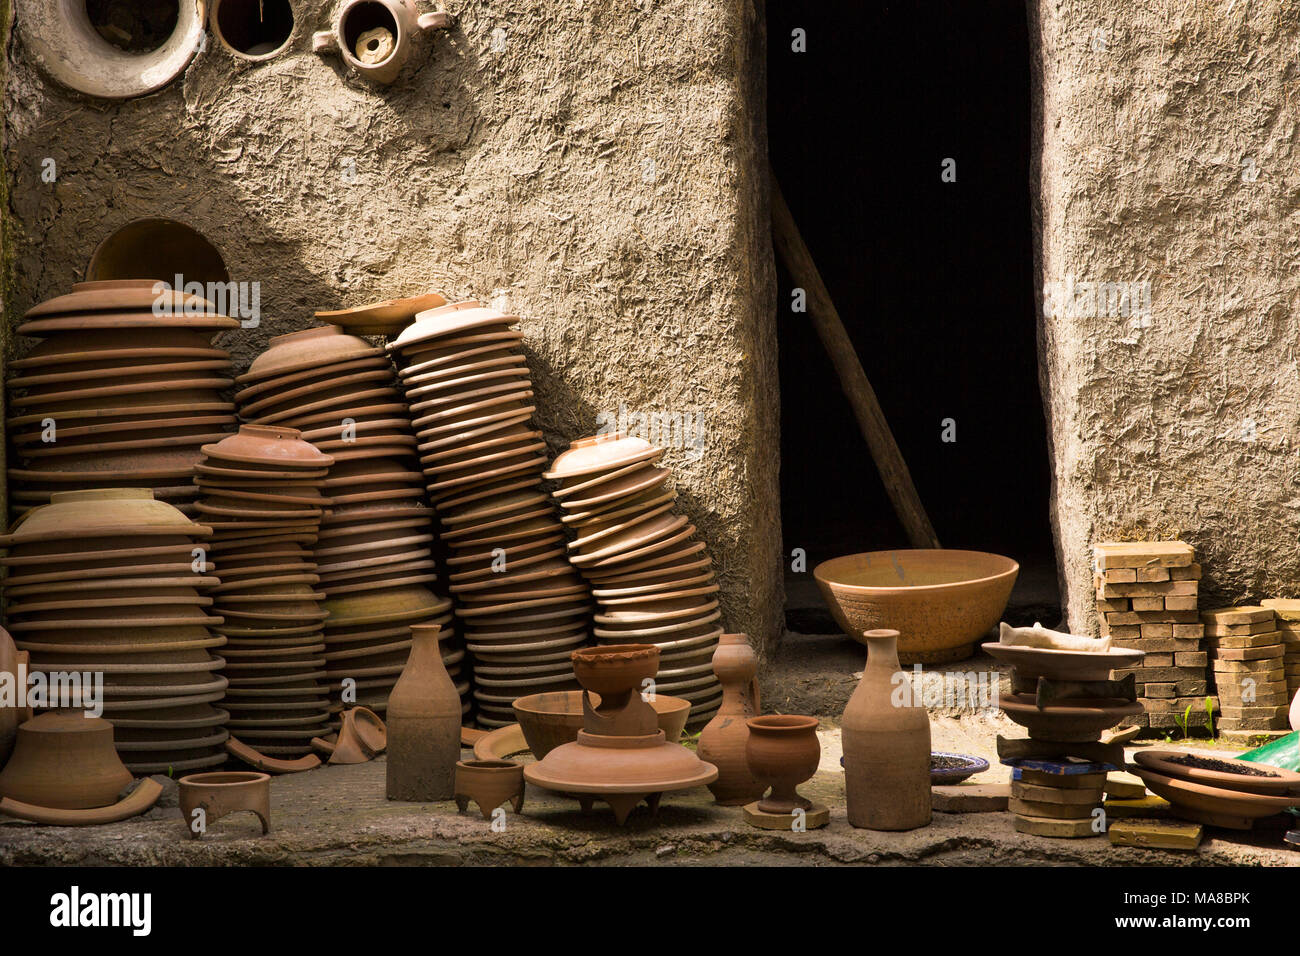 Morocco, Fes, Quartier des Potiers, Mosaique et Poterie de Fes, Pottery, old kiln, biscuit fired pots Stock Photo